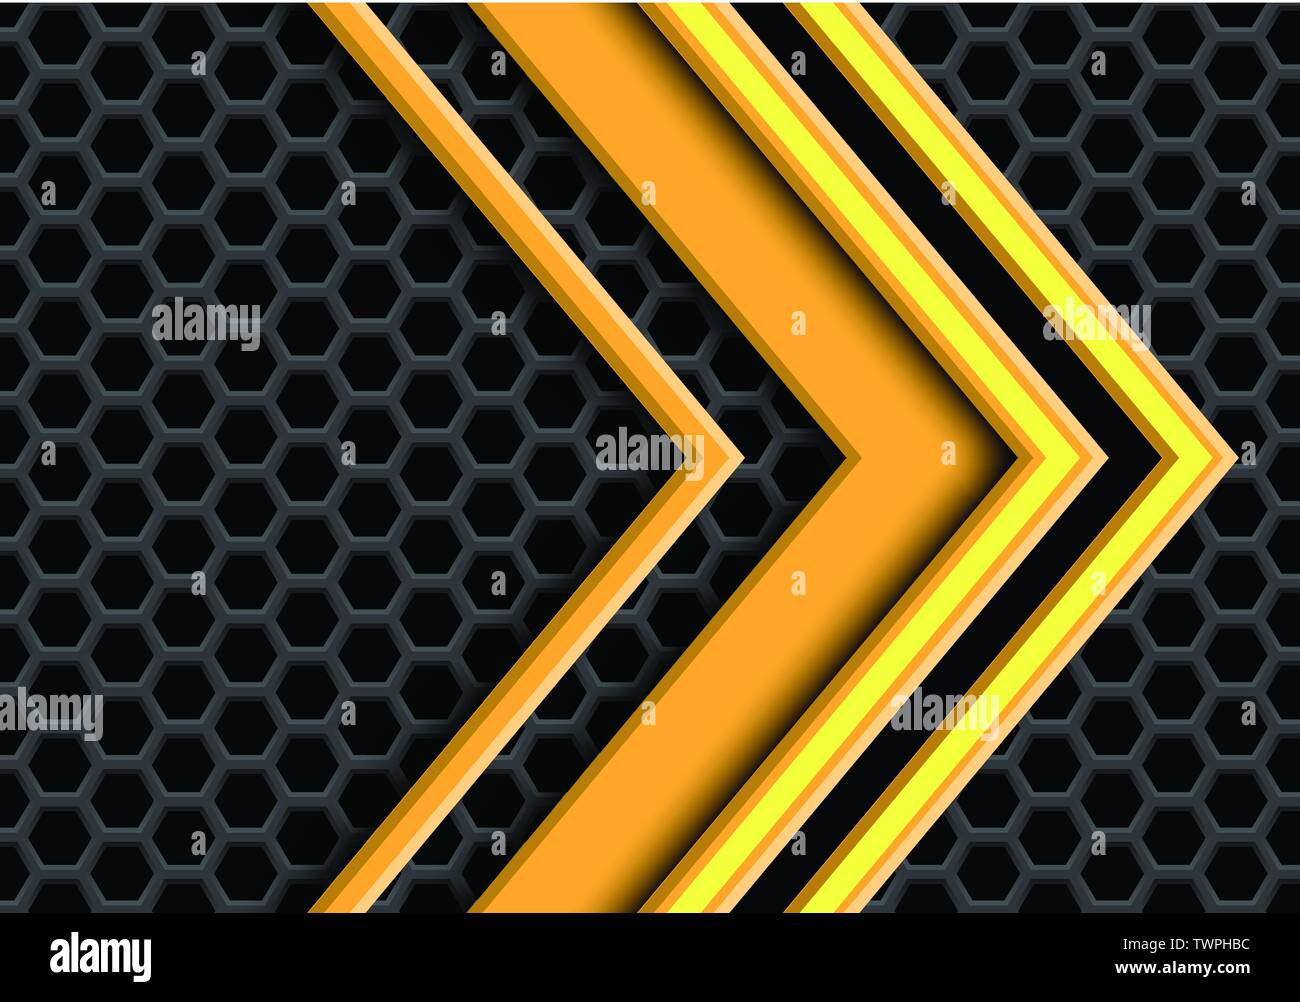 Abstract flèche jaune se recoupent sur maille hexagonale moderne design futuristic background vector illustration. Illustration de Vecteur